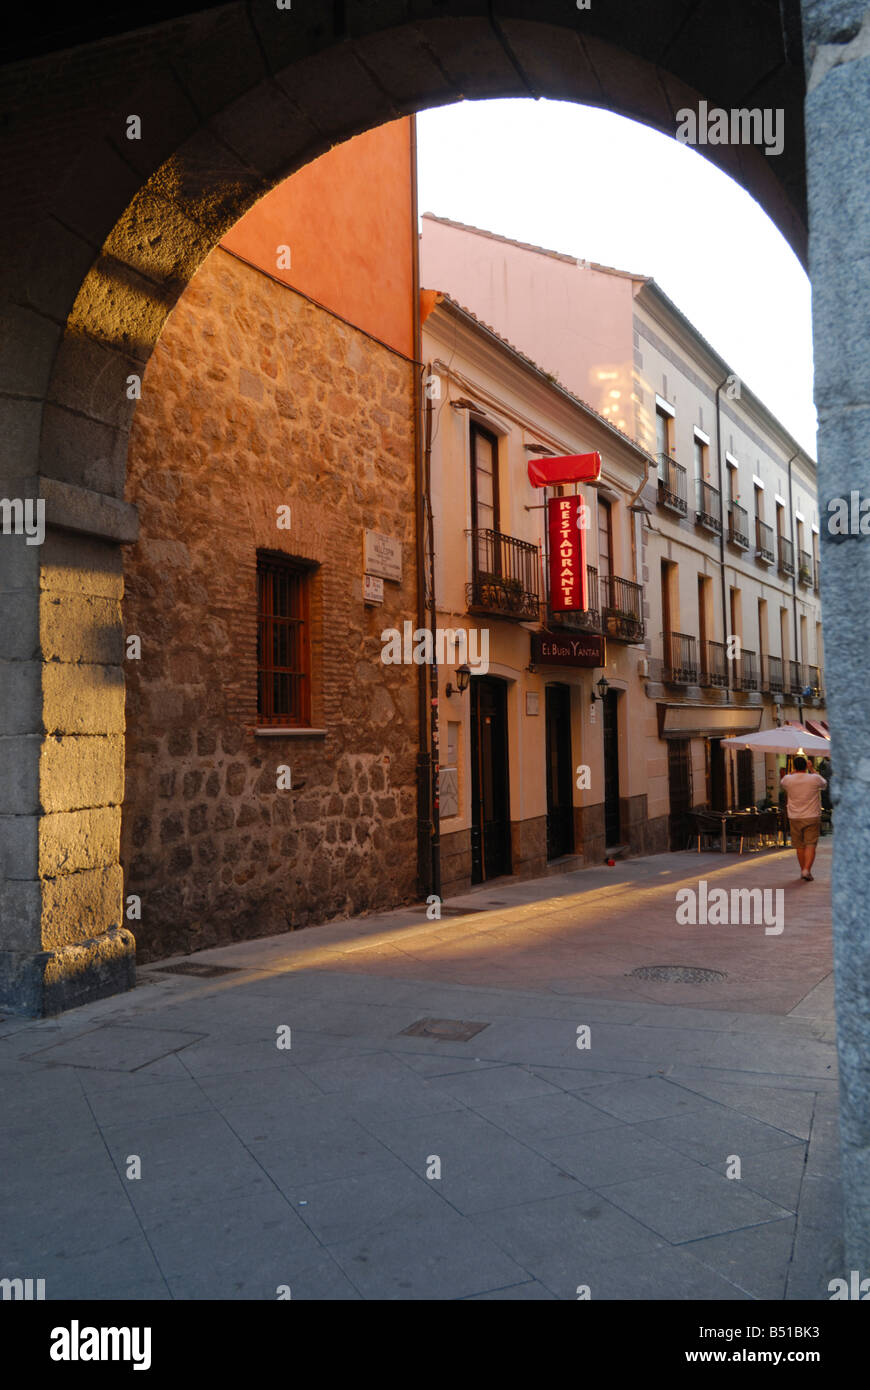 Stree Szene auf der Suche von der Plaza del Mercado Chico, Avila, Spanien Stockfoto